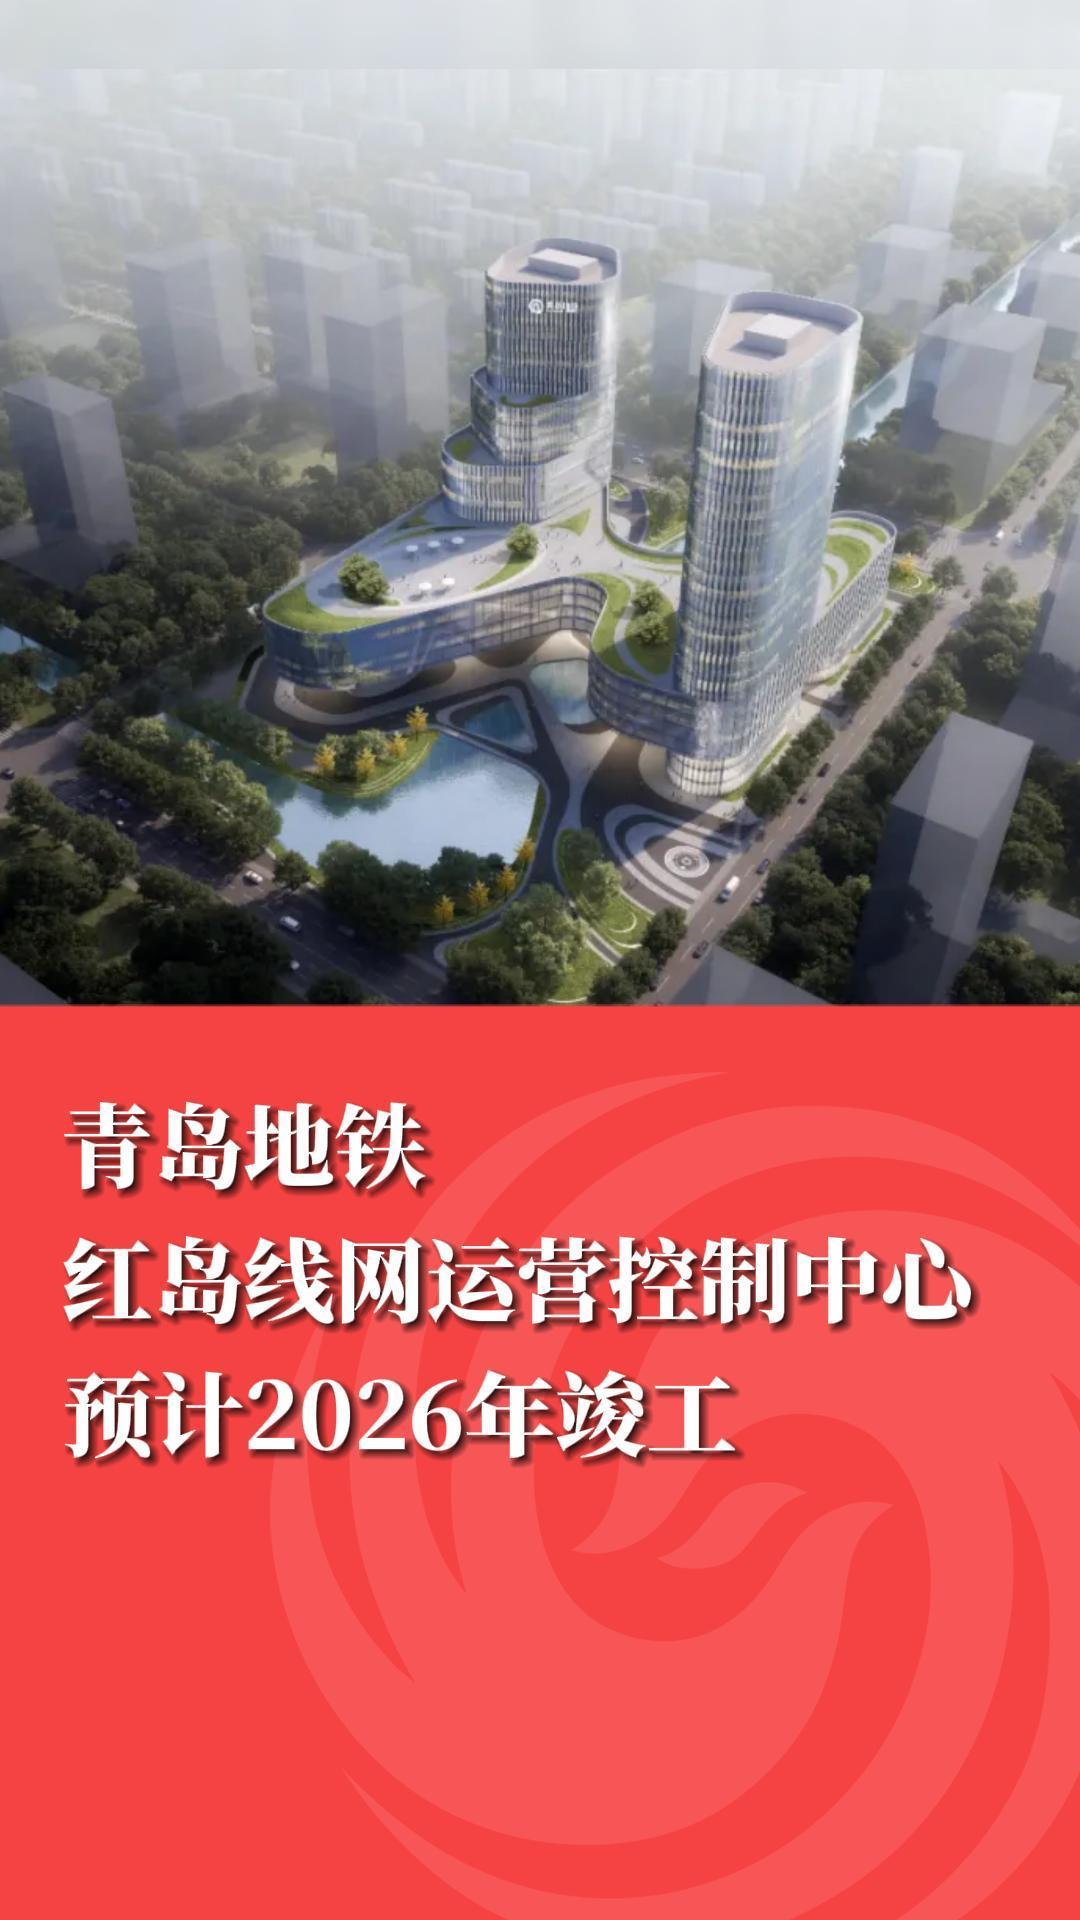 青岛地铁红岛线网运营控制中心预计2026年竣工